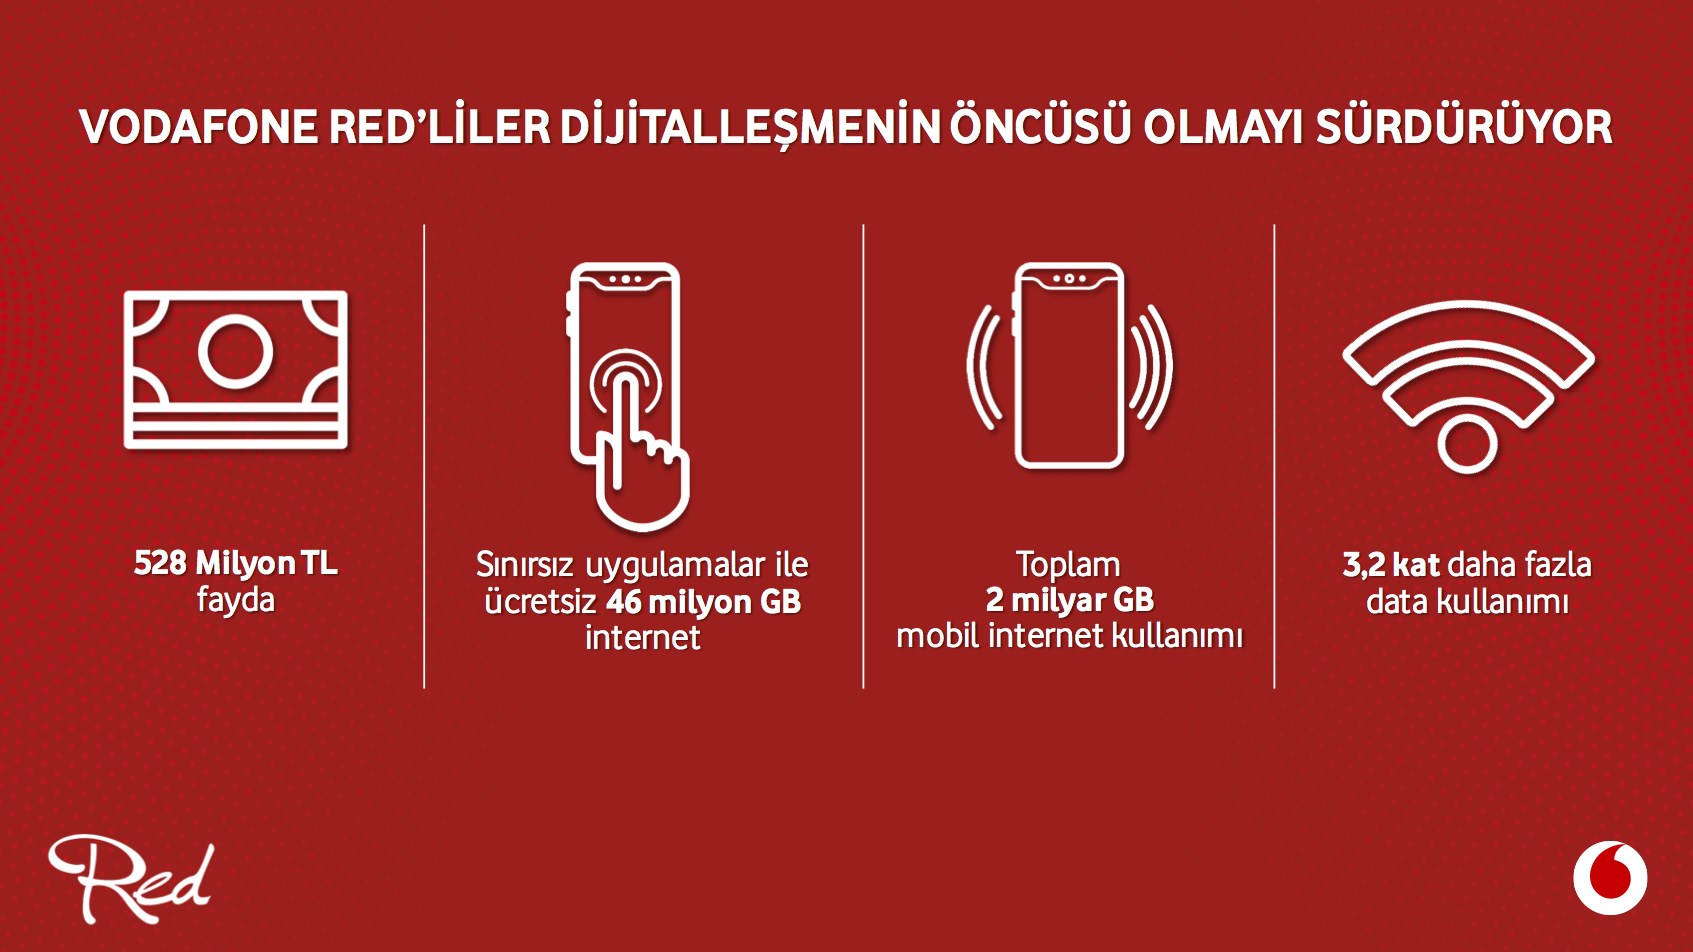 Vodafone Red aboneleri bir yılda 528 milyon TL tasarruf elde etti